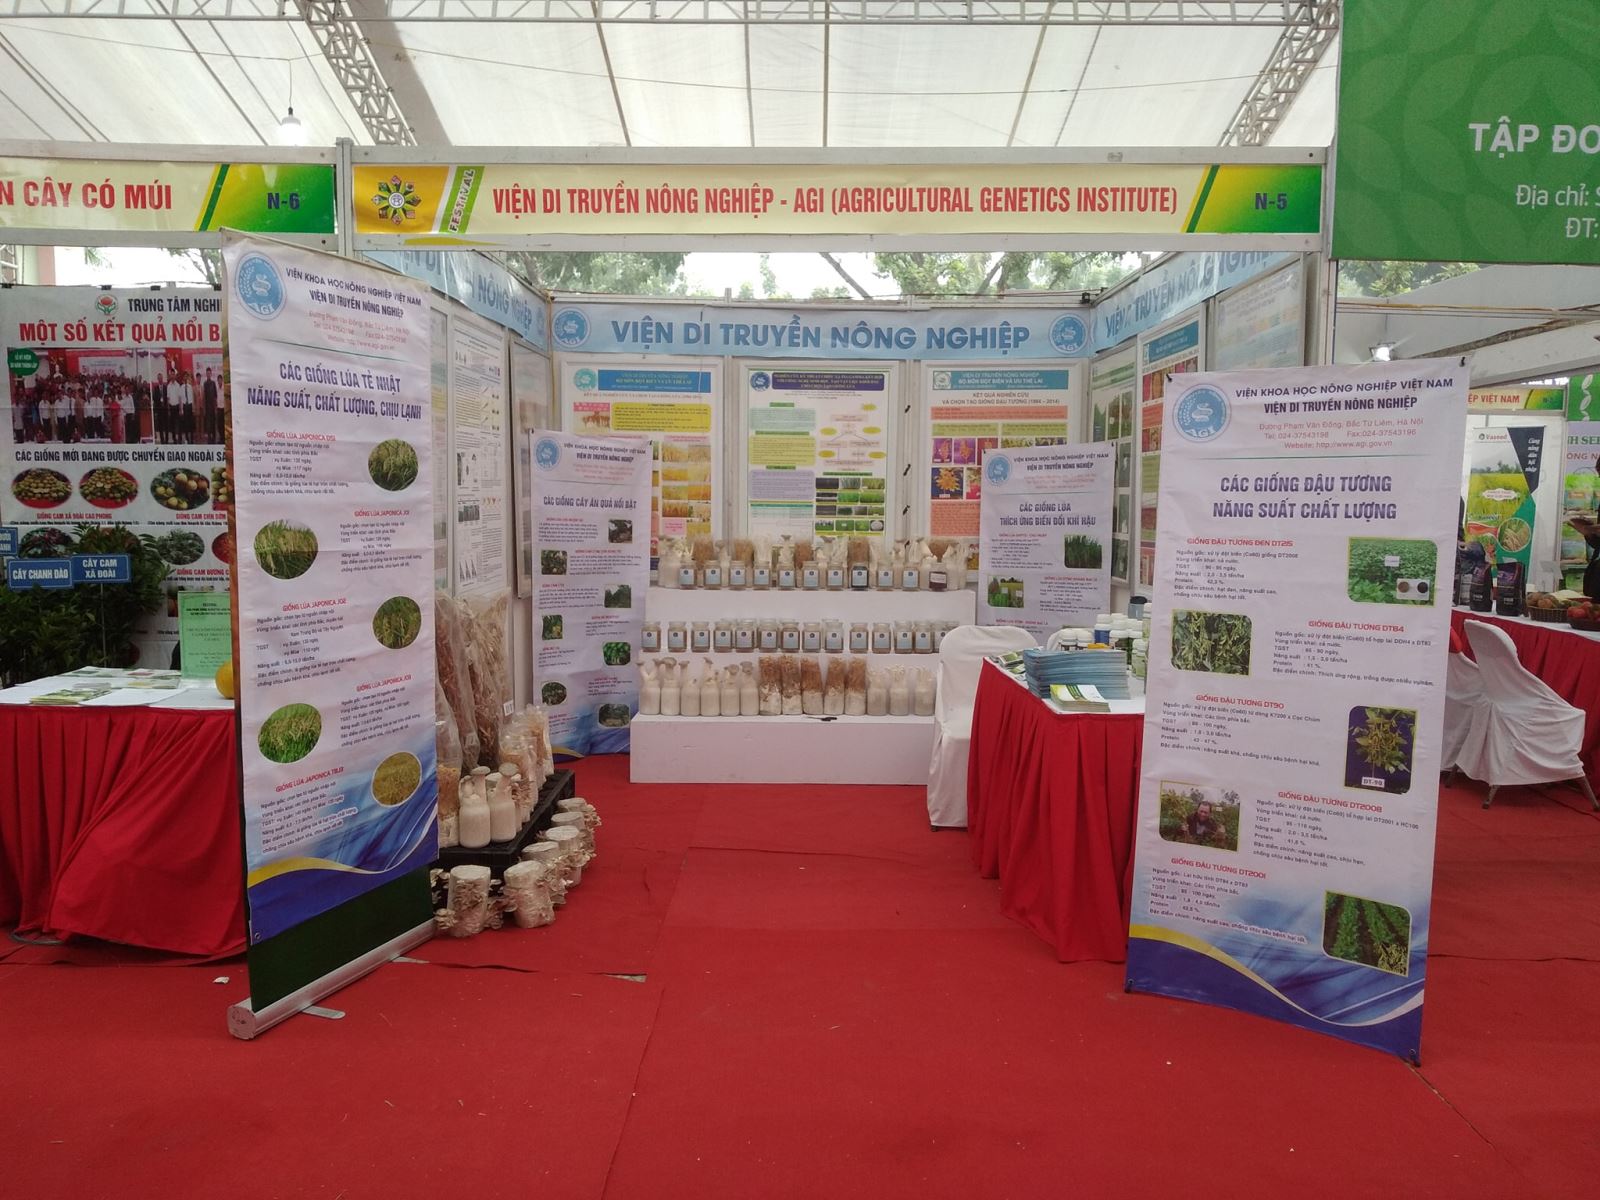 Viện Di truyền Nông nghiệp tham gia Festival sản phẩm nông nghiệp và làng nghề Hà Nội lần thứ nhất năm 2019